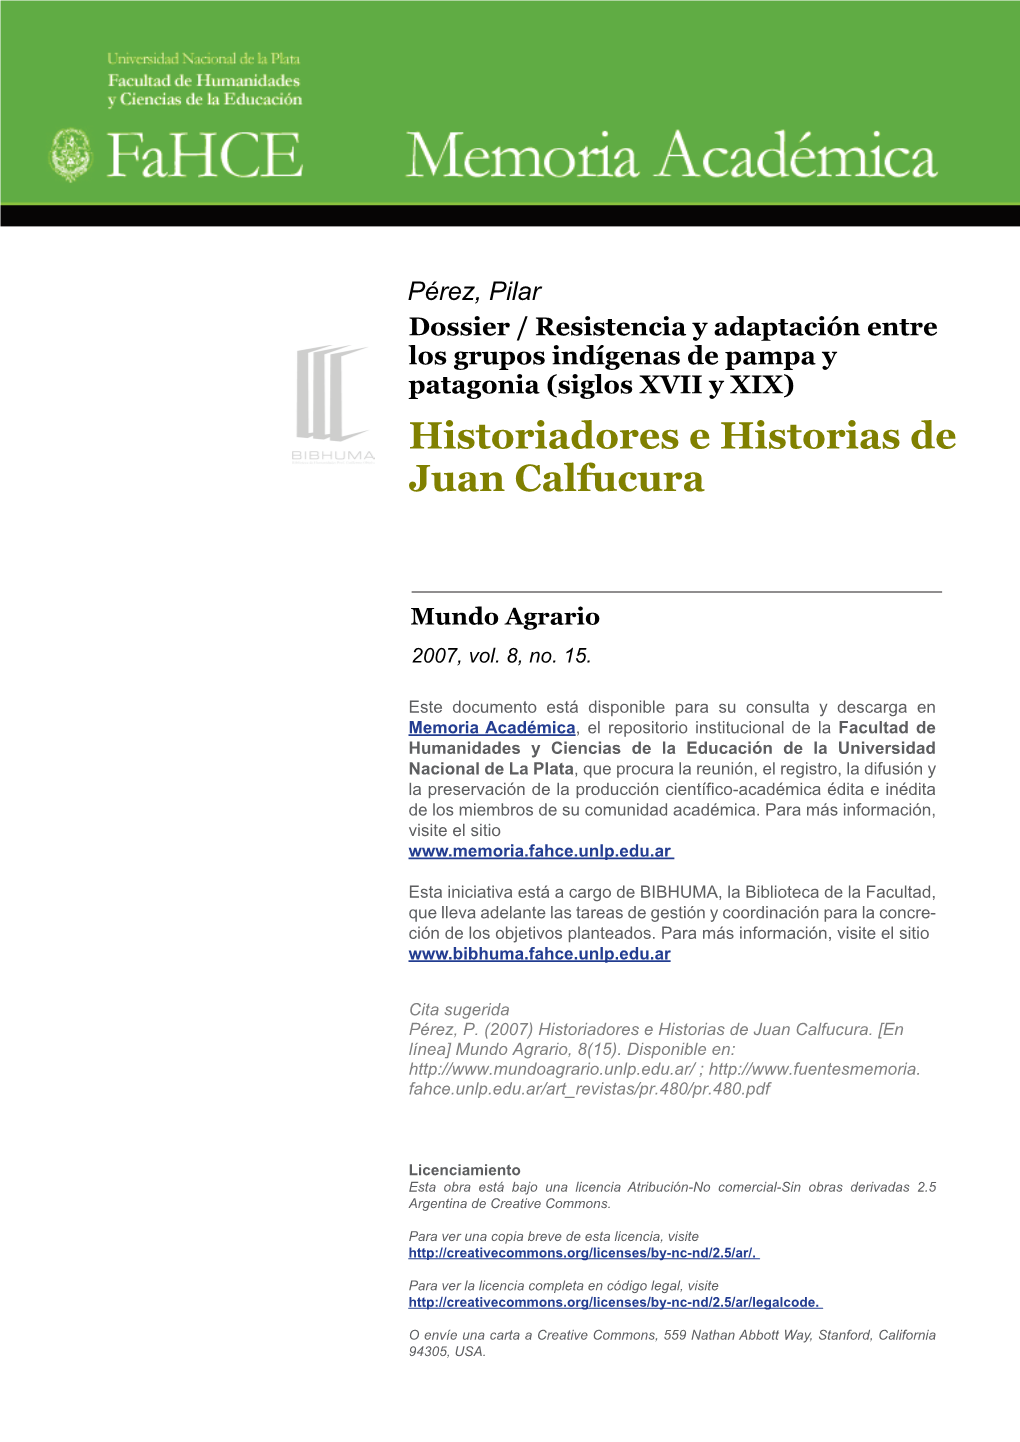 Historiadores E Historias De Juan Calfucura